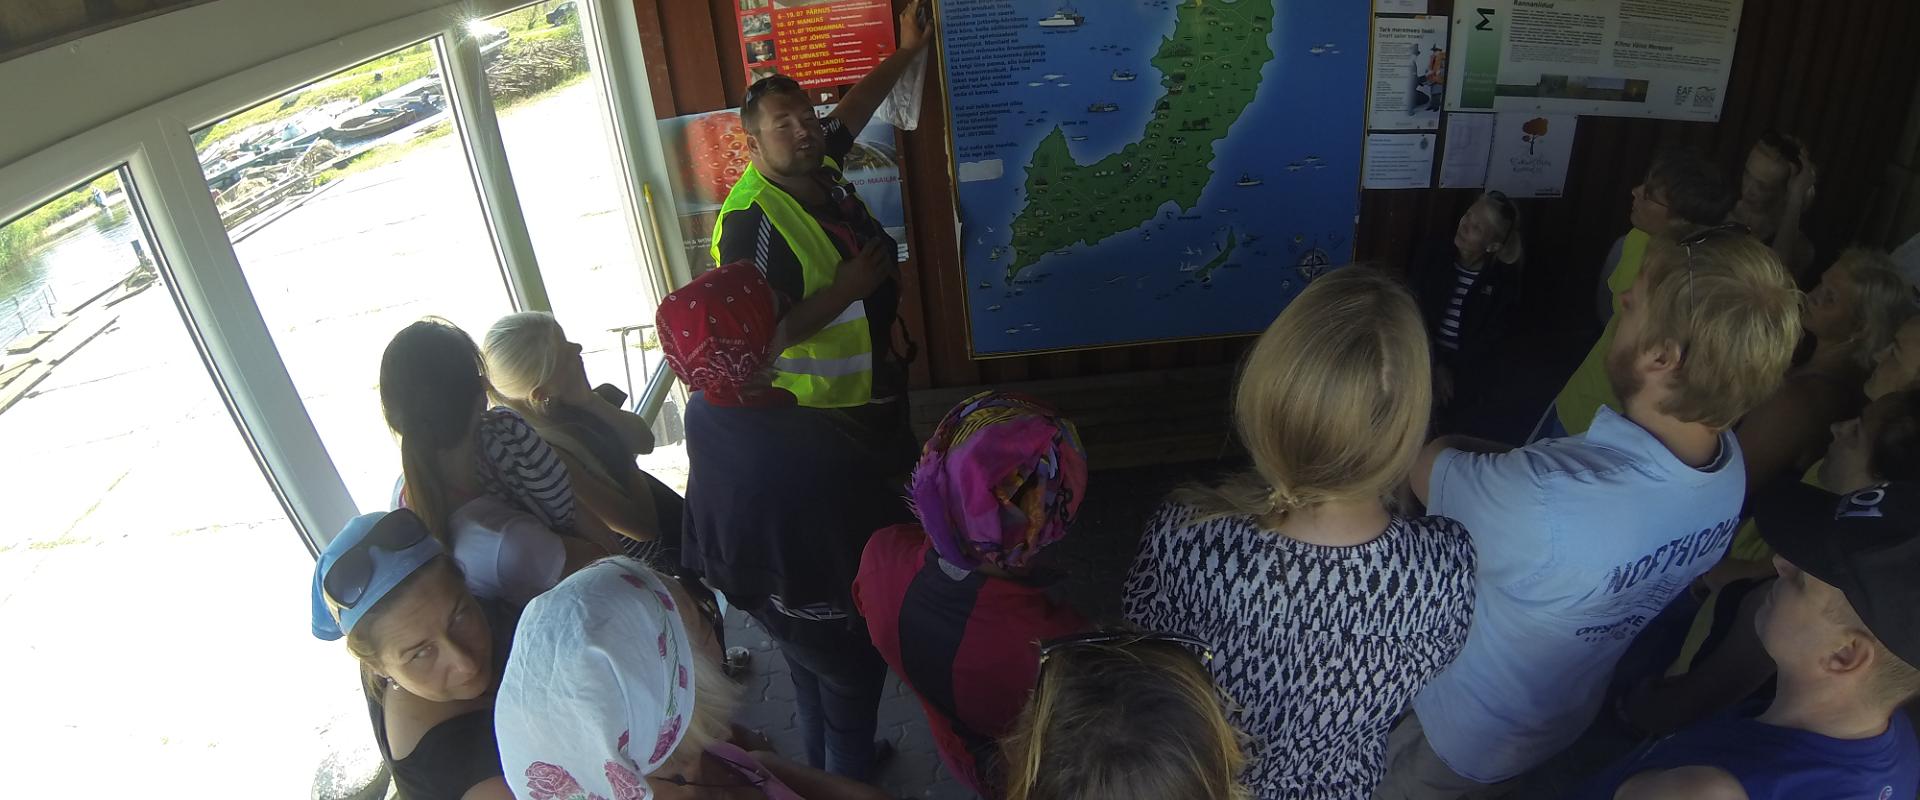 Segelfahrt mit „Seikle vabaks“ auf die Insel Manija